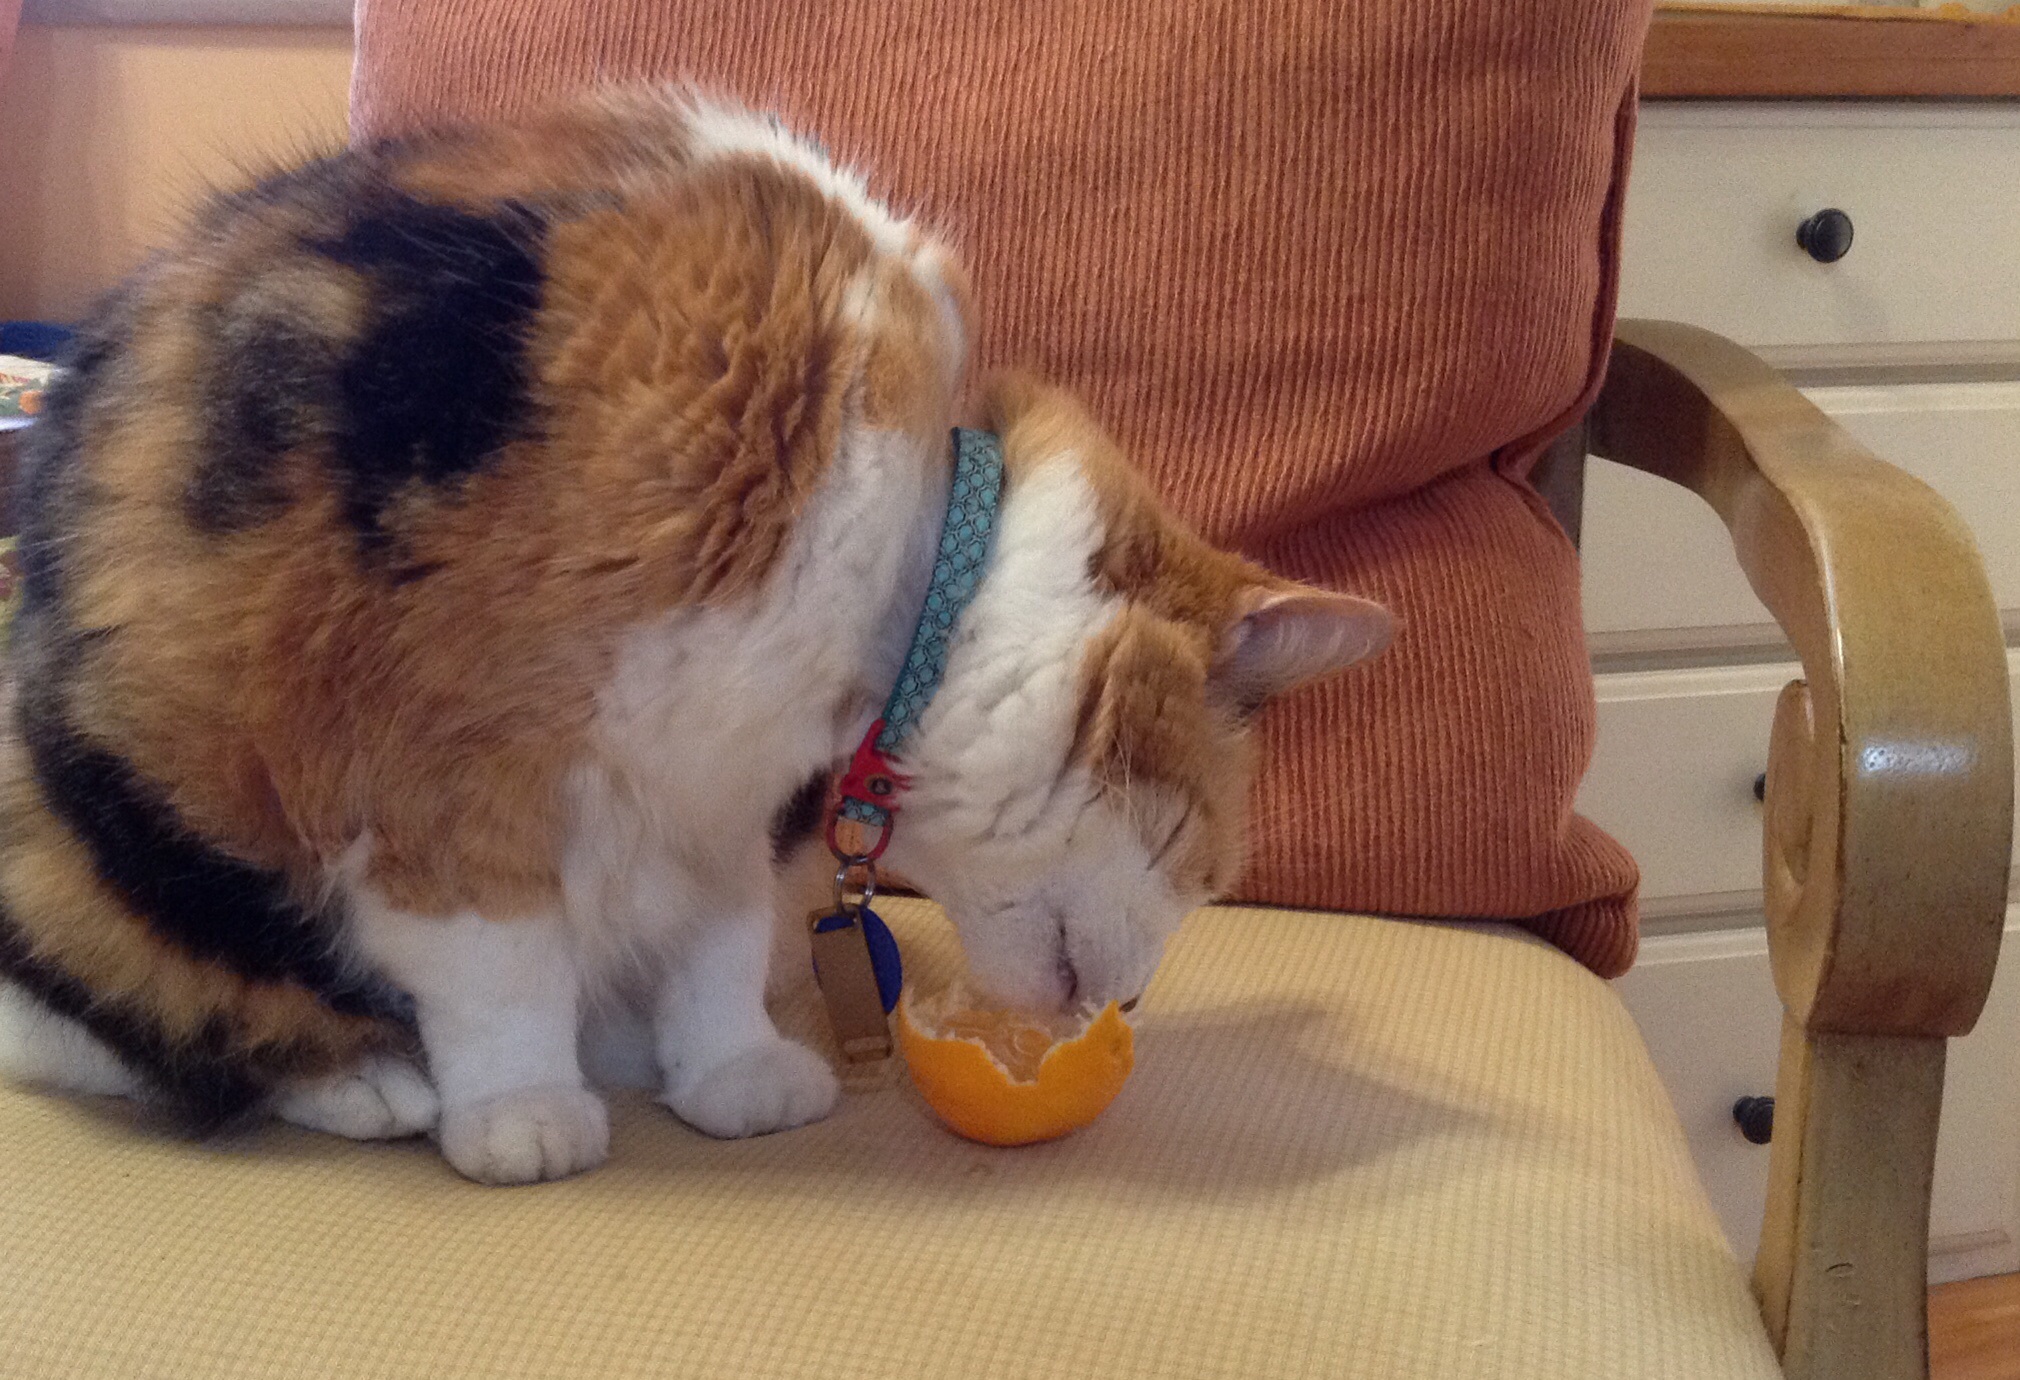 cat eating orange